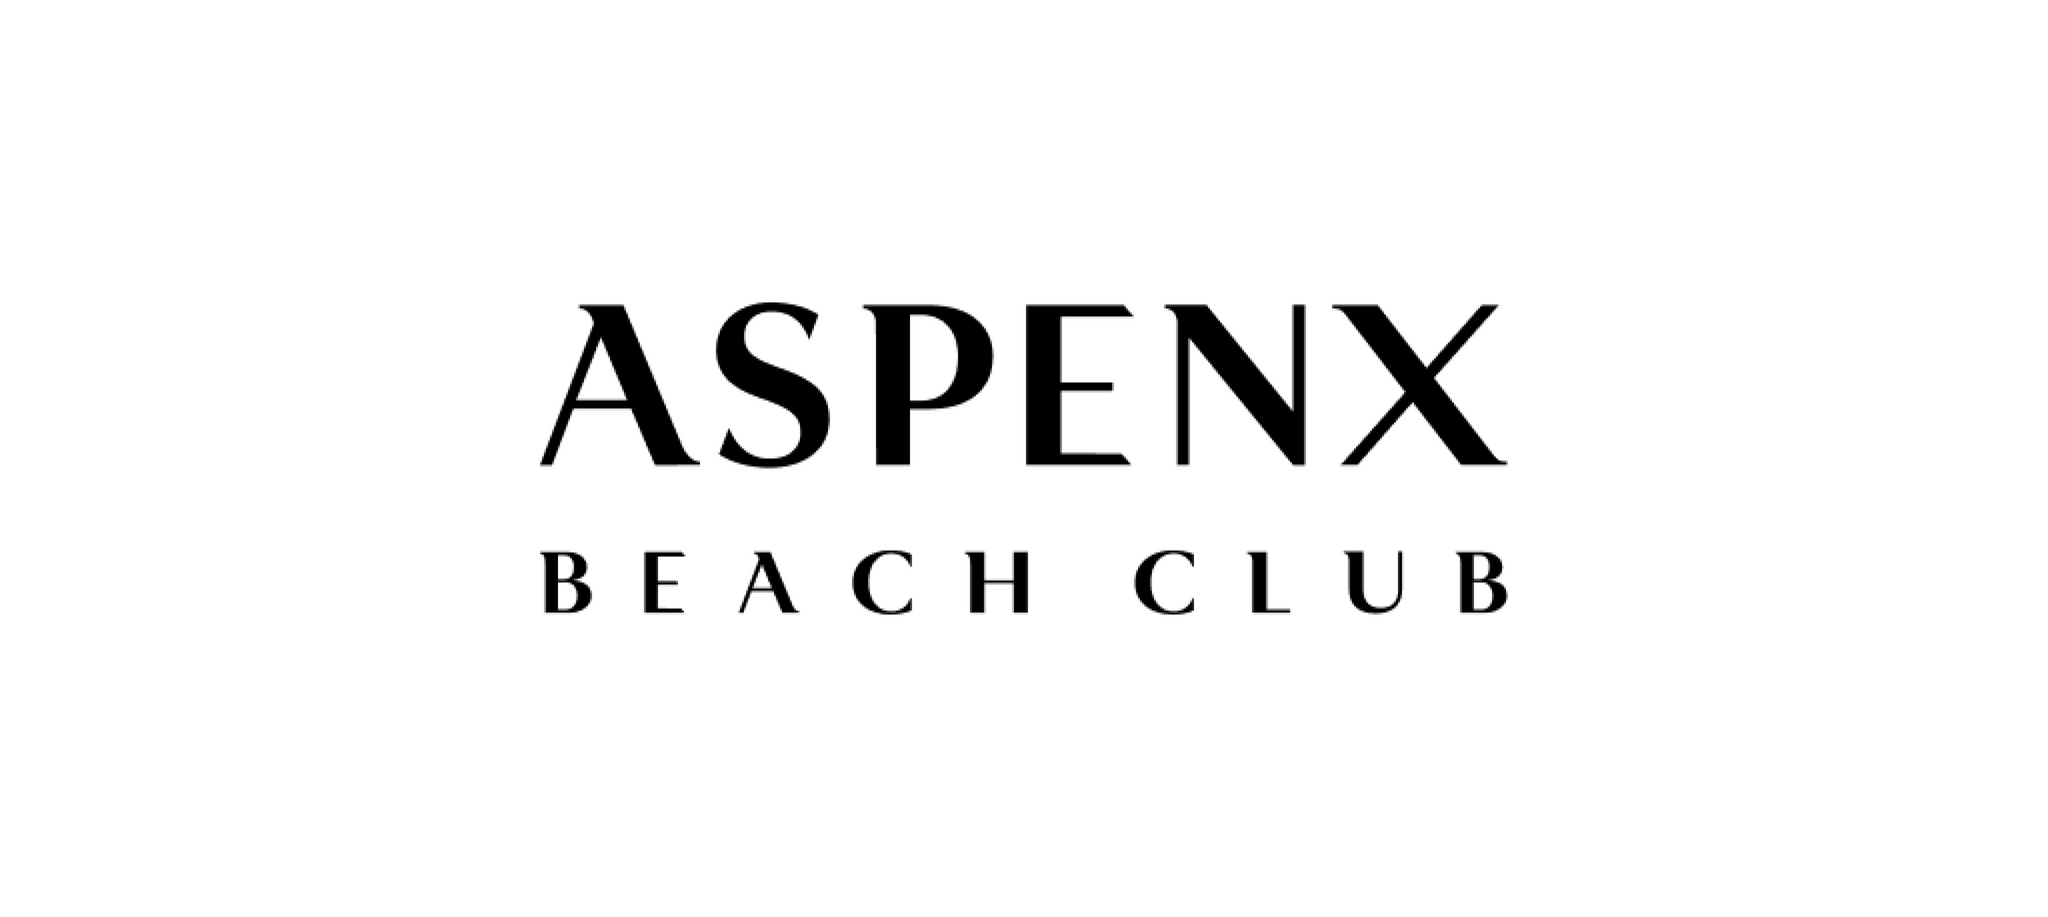 ASPENX Beach Club Gift Card